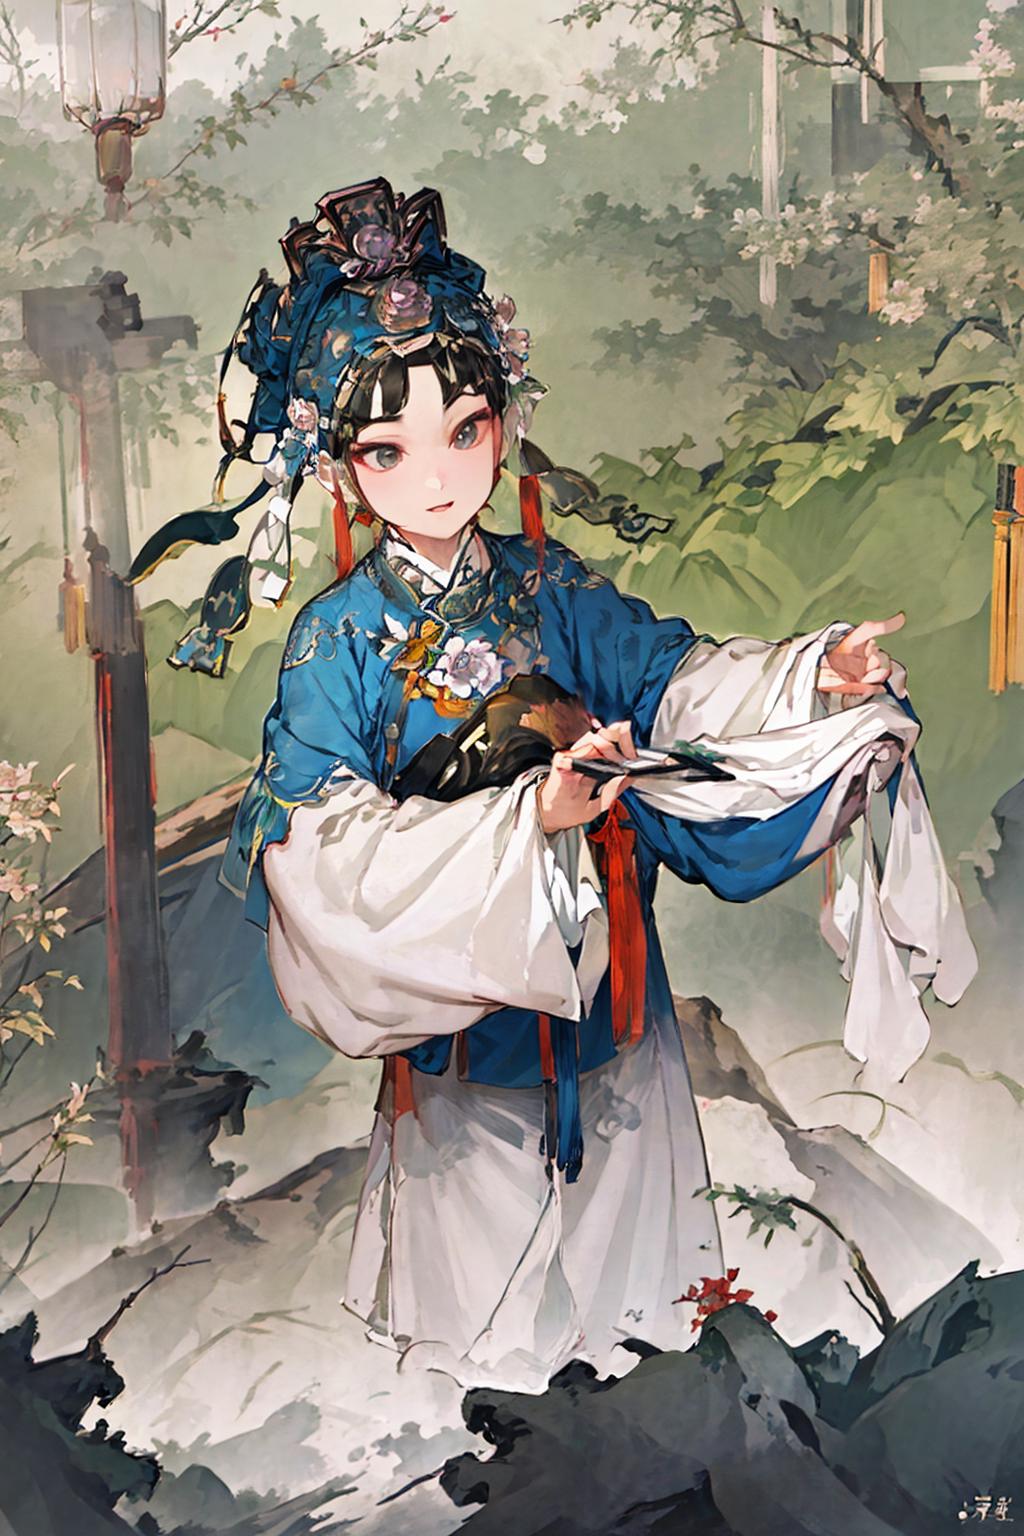 戏装 Chinese Opera Costumes image by AlchemistW